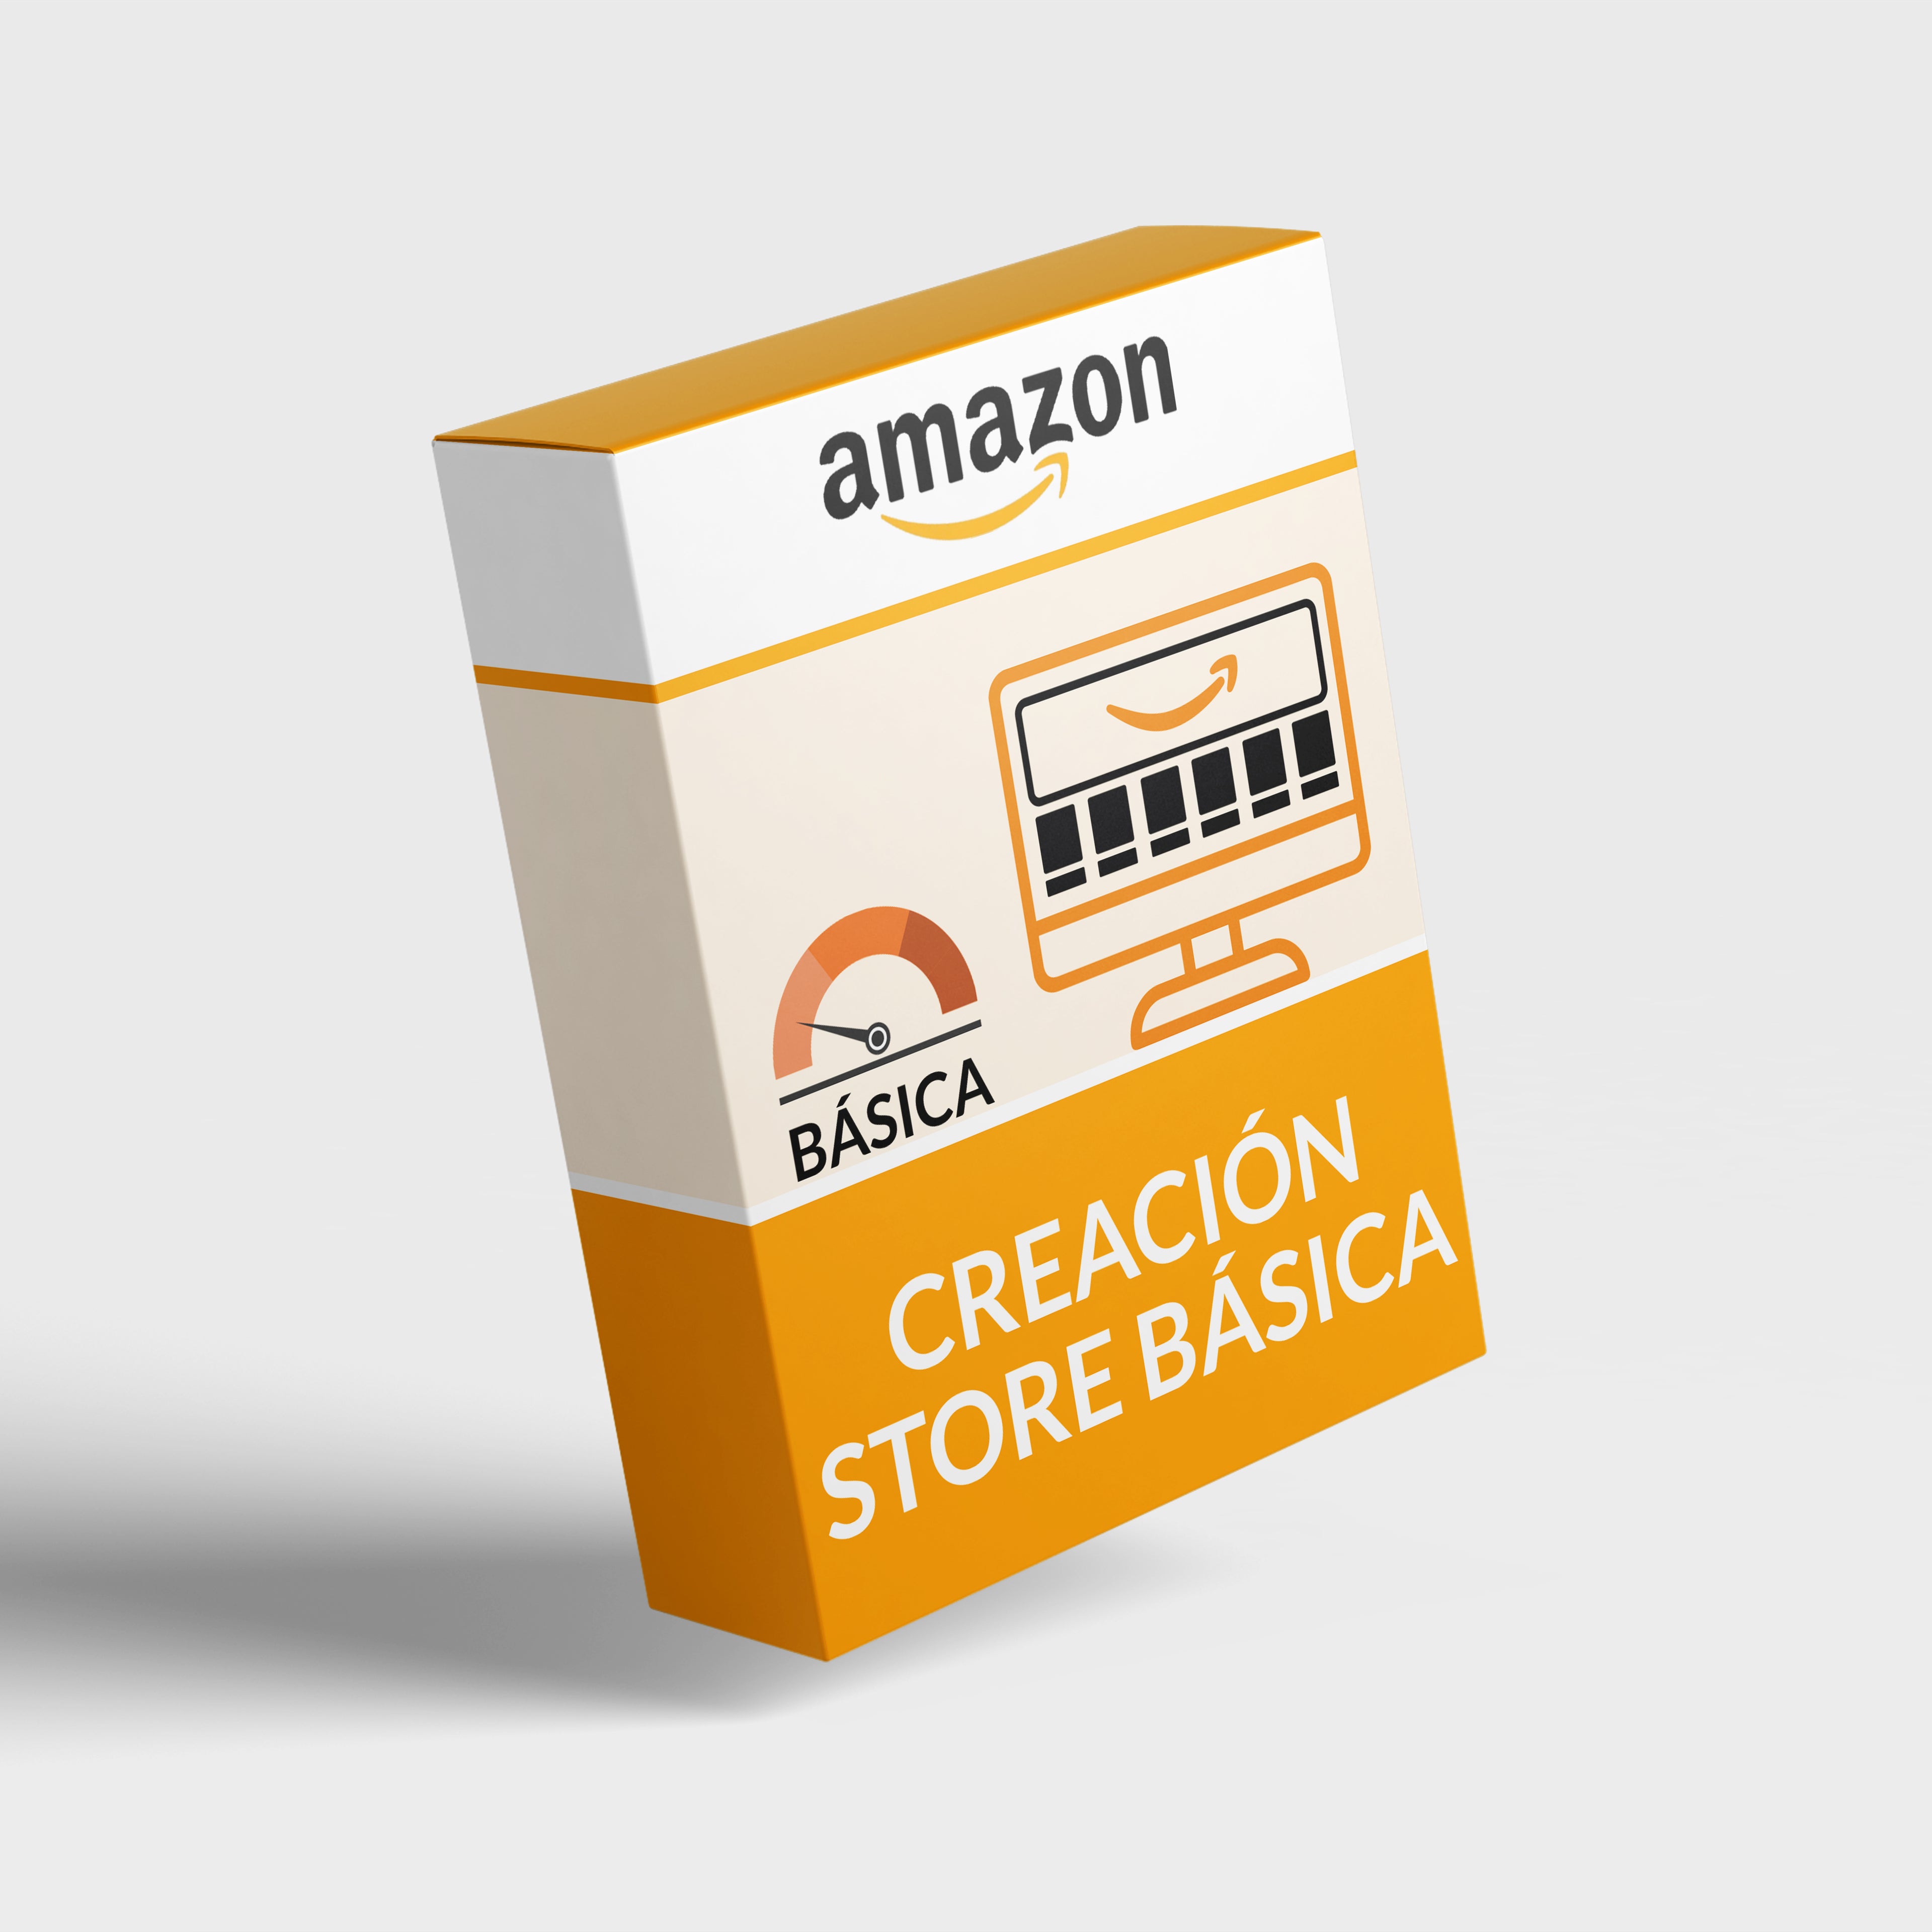 Creación store (tienda) básica Amazon